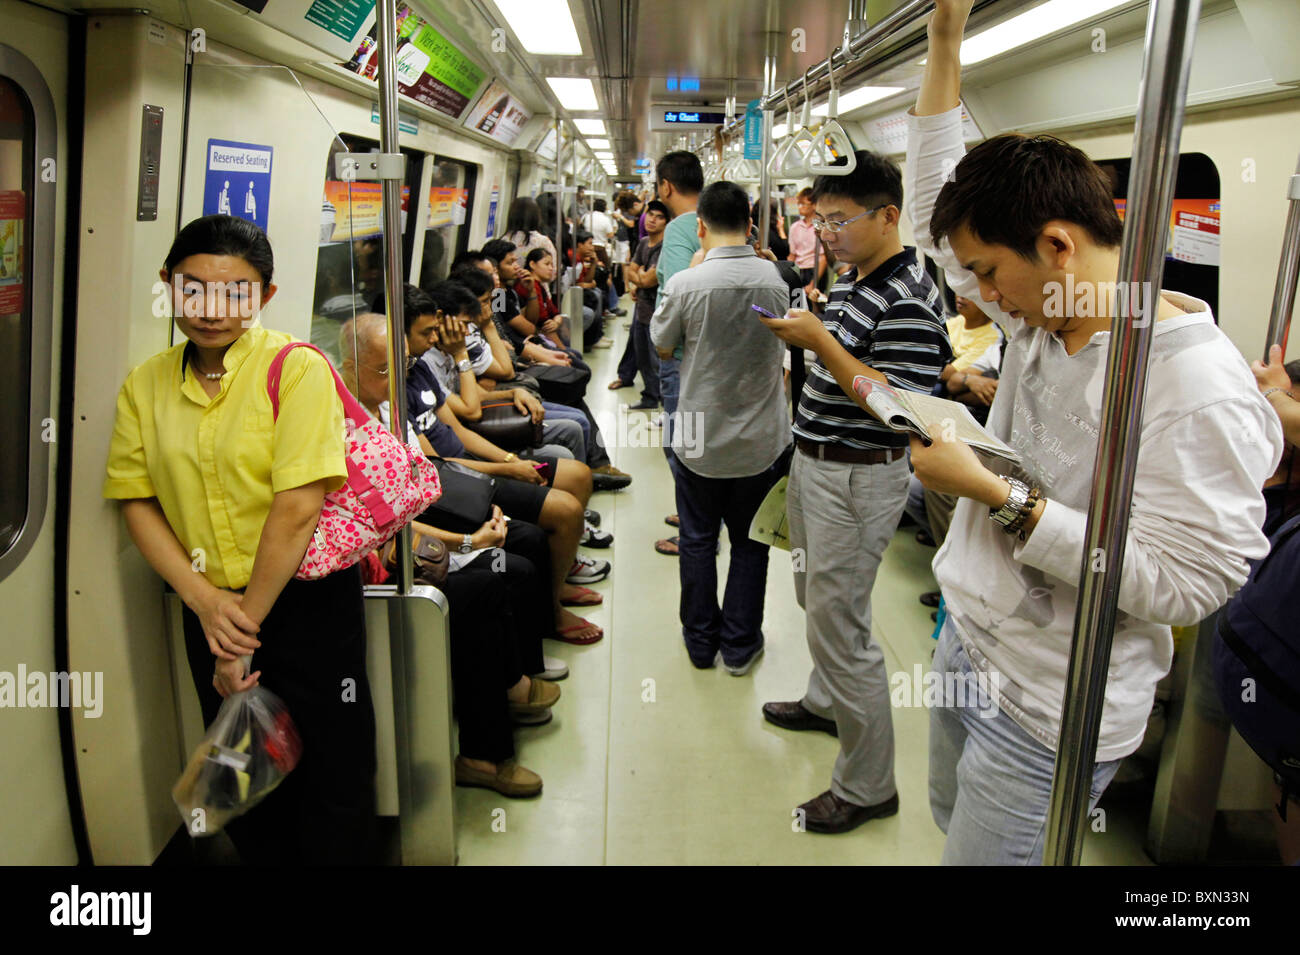 Singapour : les passagers dans une voiture de MRT (Mass Rapid Transport) système de métro Banque D'Images